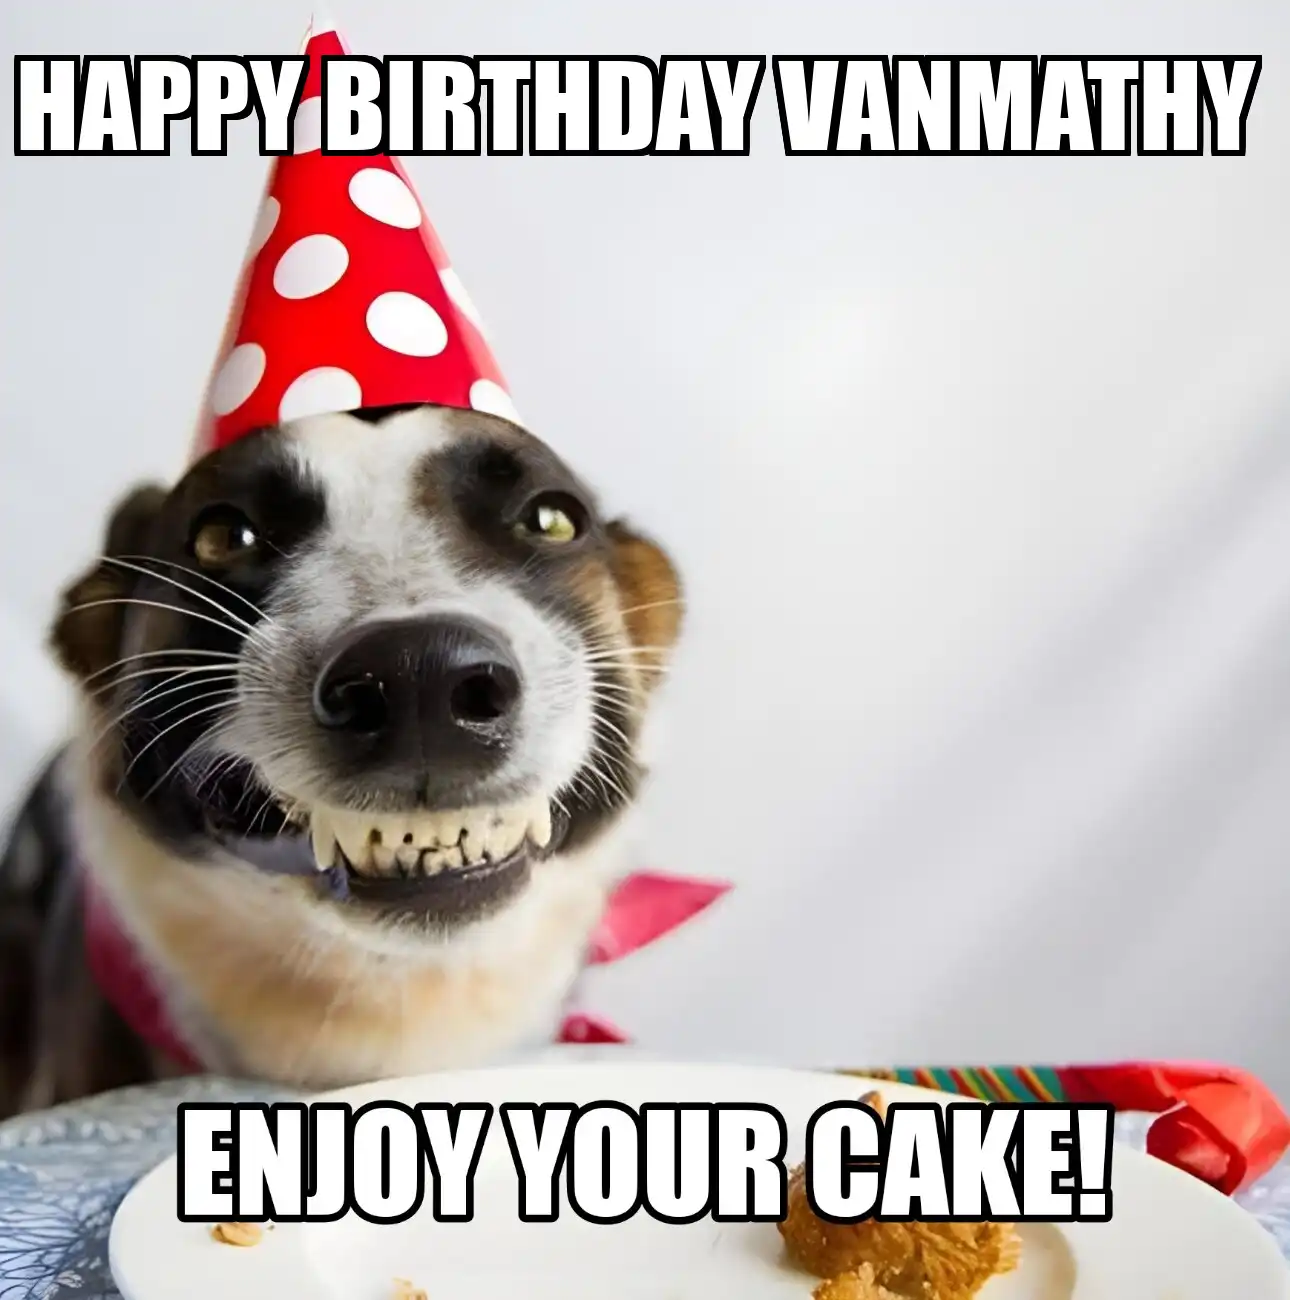 Happy Birthday Vanmathy Enjoy Your Cake Dog Meme